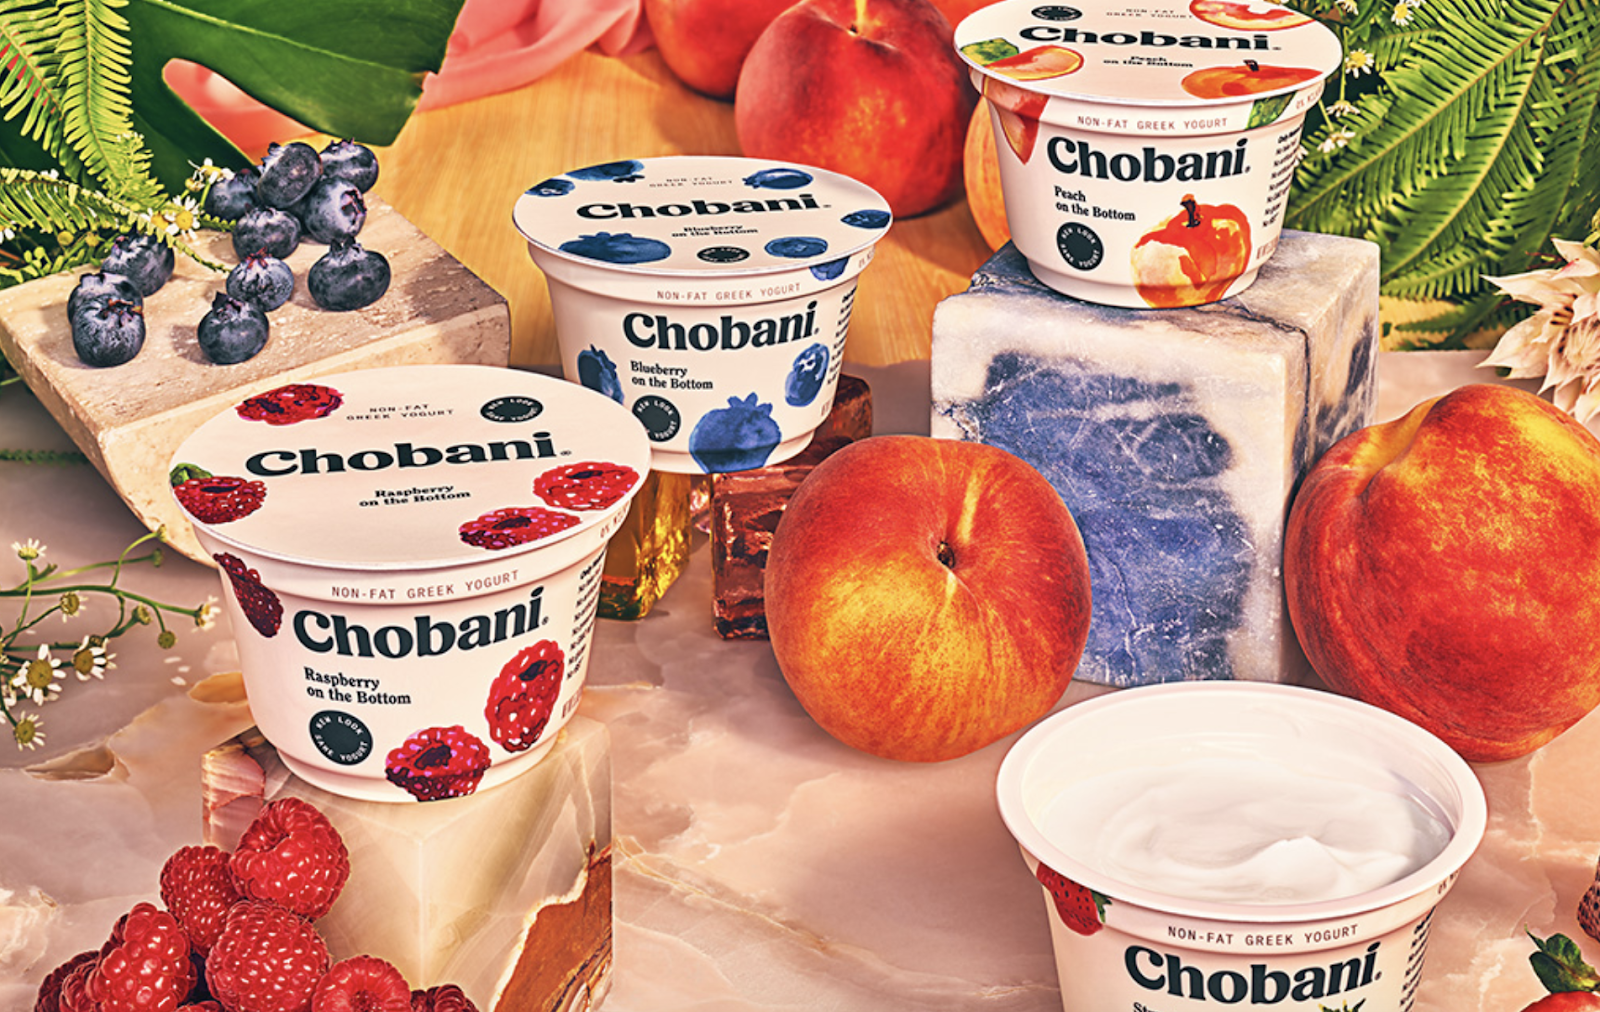 rebranding strategies: chobani's new packaging